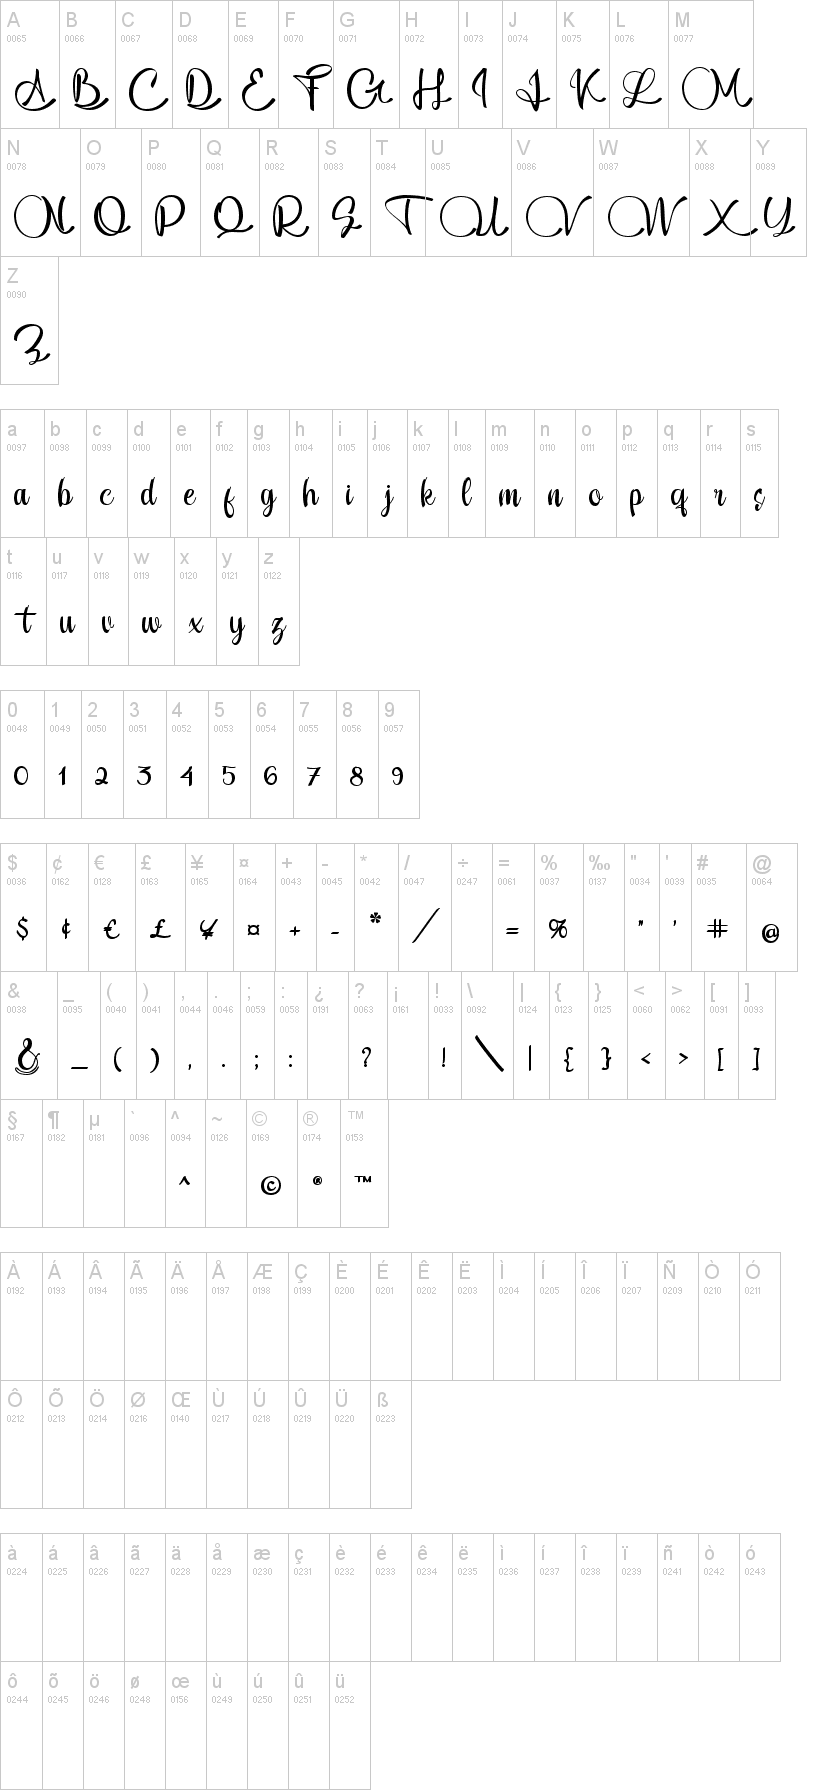 Шрифт Peace. Zenzai Itacha font. Cheri шрифт на русском. Font making Magic.